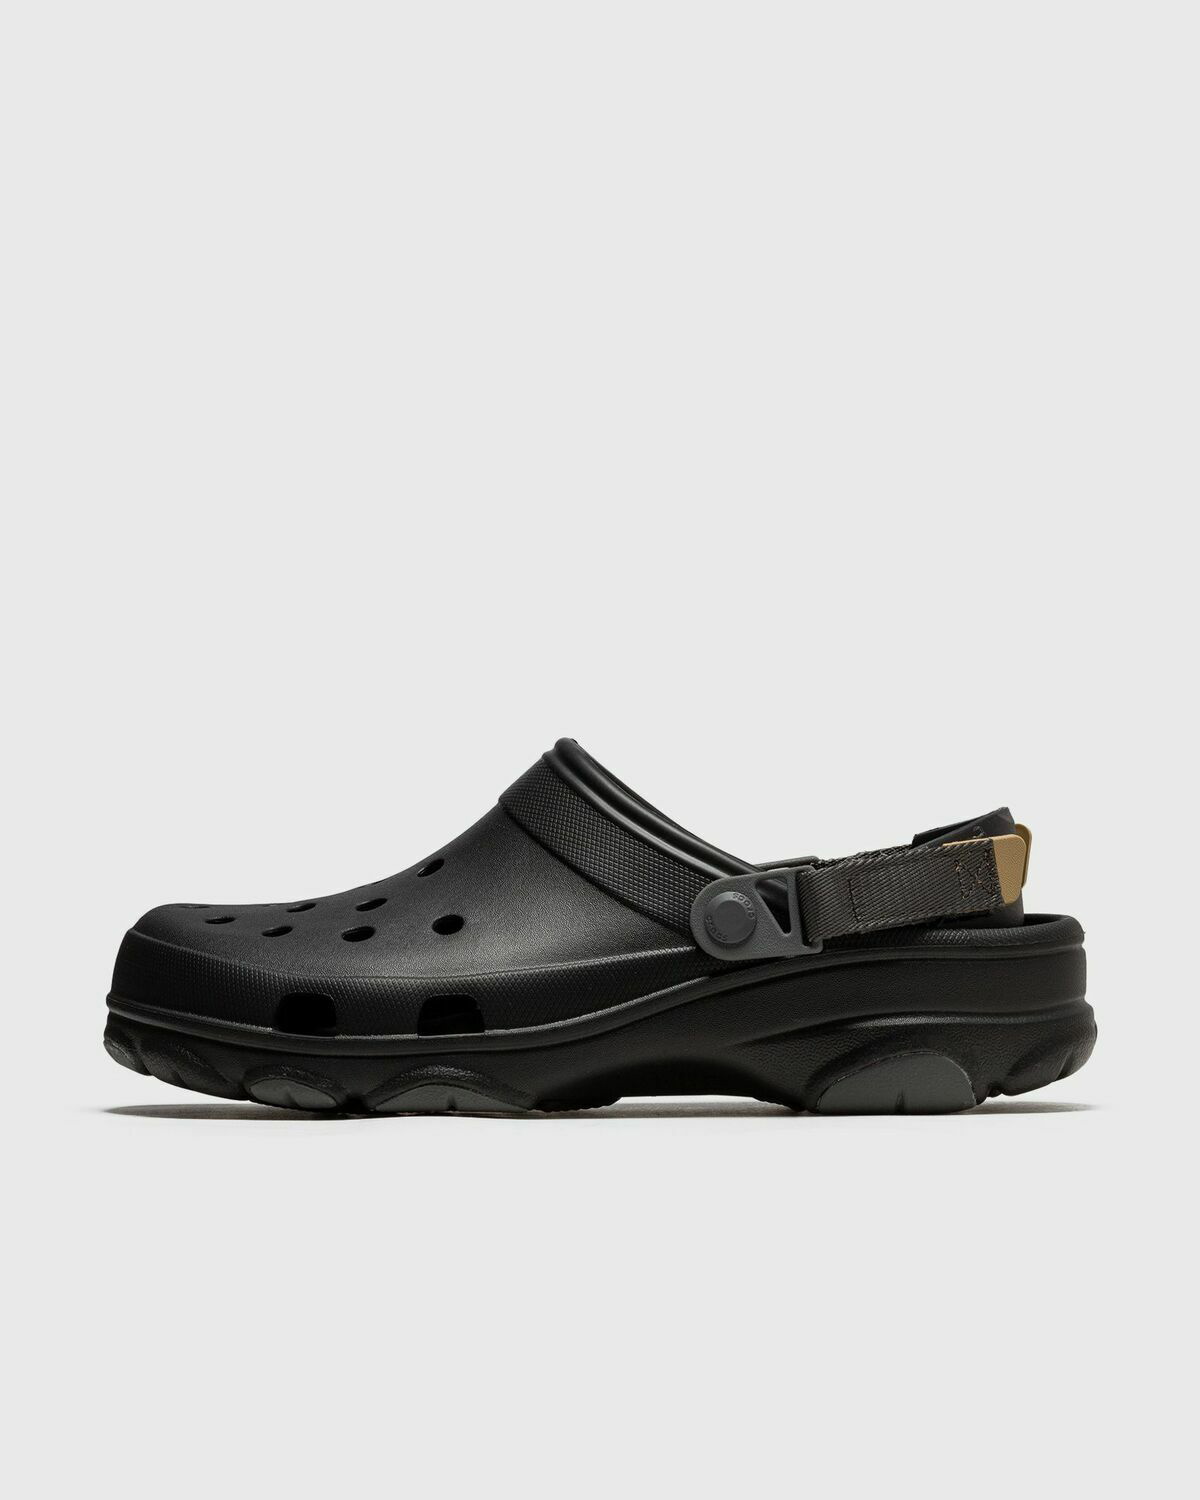 Crocs Classic All Terrain Clog Black - Mens - Sandals & Slides Crocs